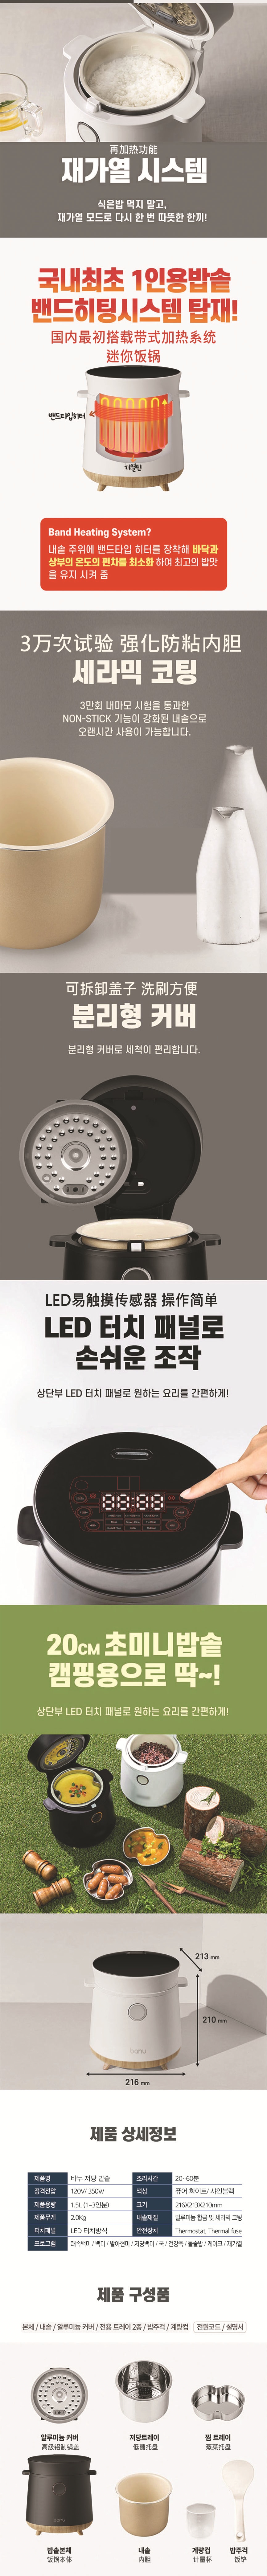 韩国 BANU 减糖电饭煲 低碳水化合物 多功能 LED 一键式烹饪 黑色 1.5 升 脱糖电饭煲 